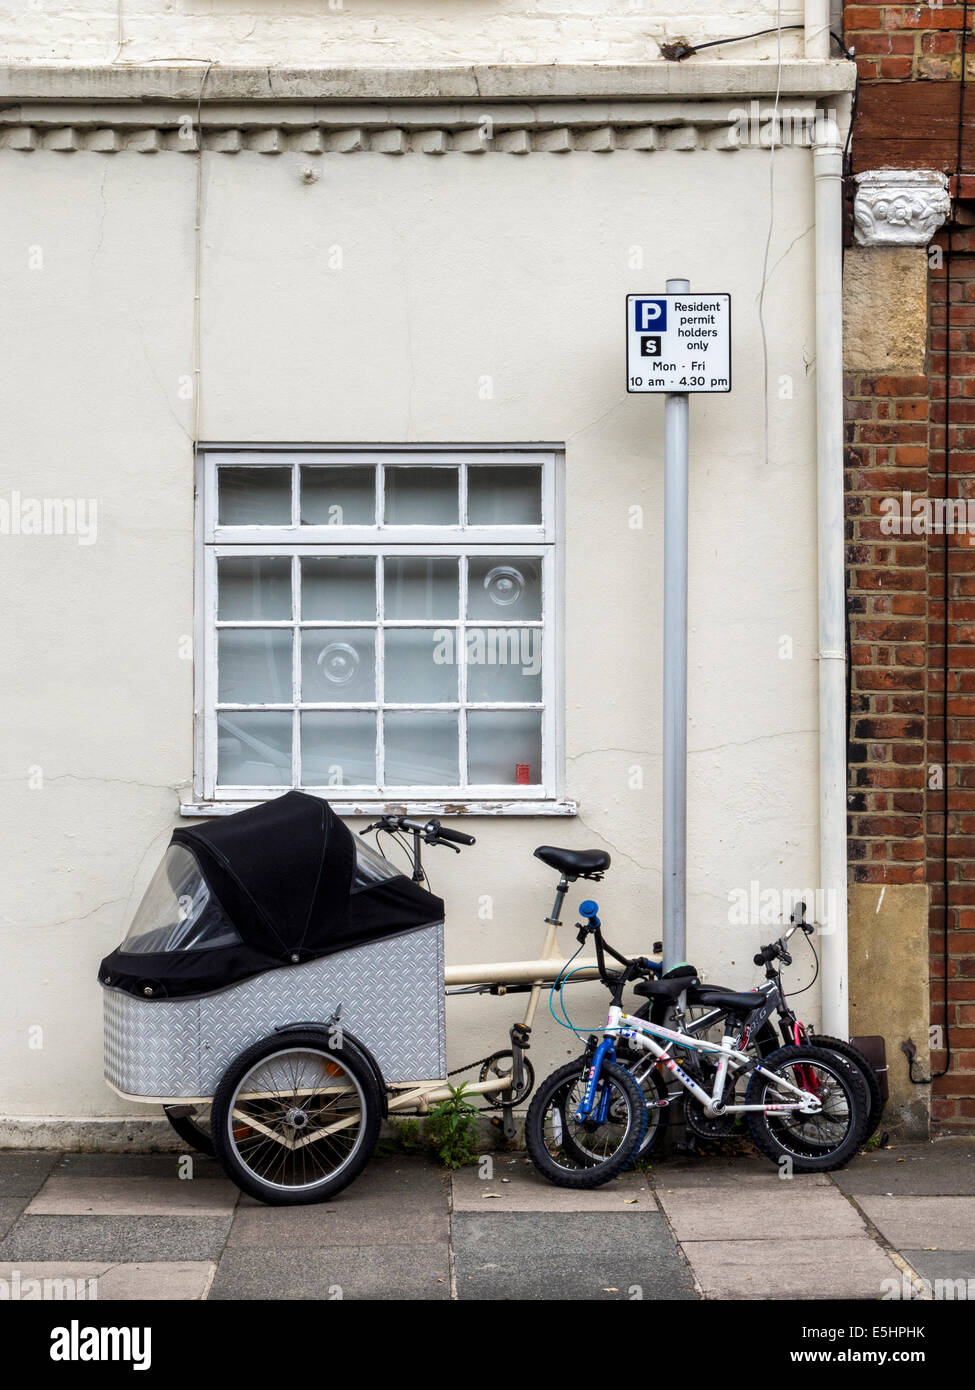 Location de porte-bébé ou un porte-bébé et vélos d'enfants à l'extérieur d'une maison à Twickenham, London, UK Banque D'Images